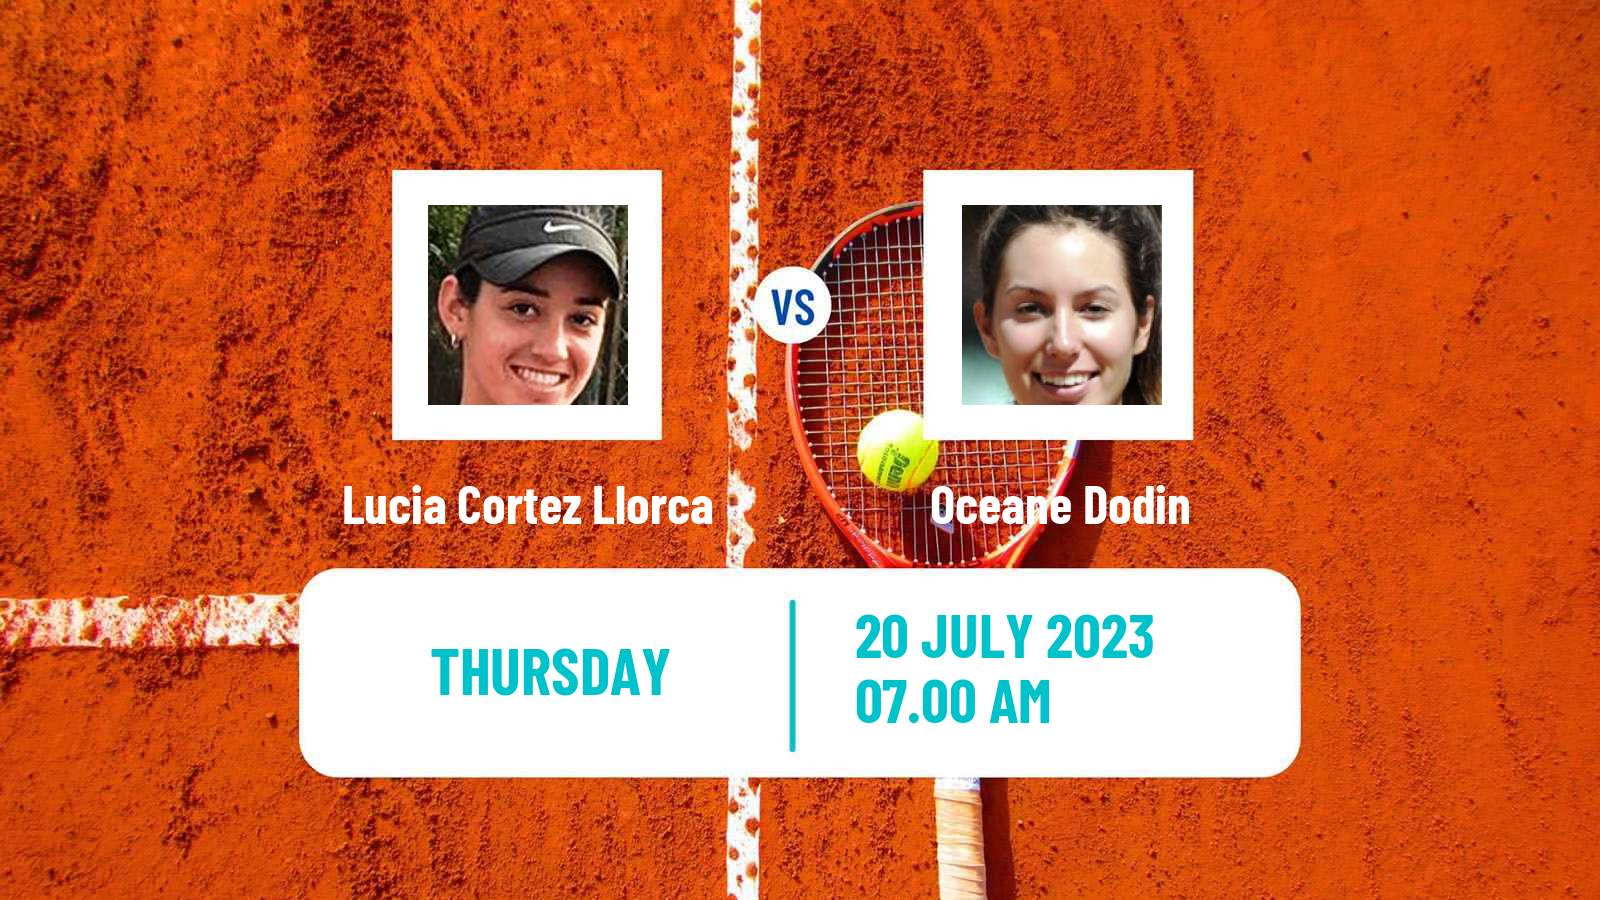 Tennis ITF W100 Vitoria Gasteiz Women Lucia Cortez Llorca - Oceane Dodin